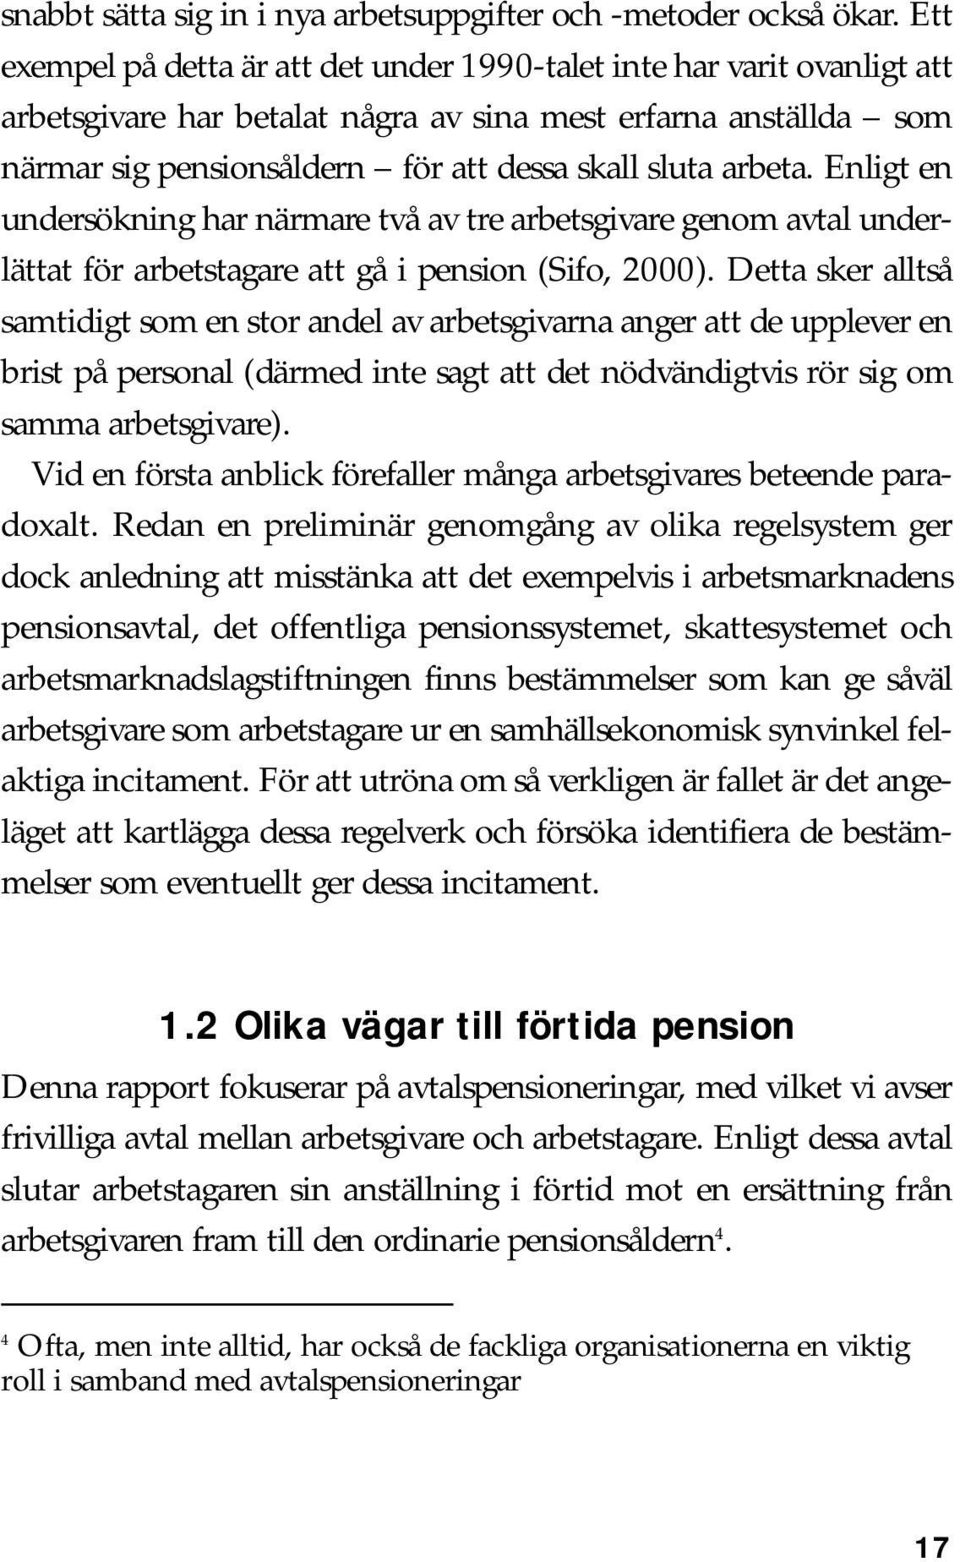 arbeta. Enligt en undersökning har närmare två av tre arbetsgivare genom avtal underlättat för arbetstagare att gå i pension (Sifo, 2000).